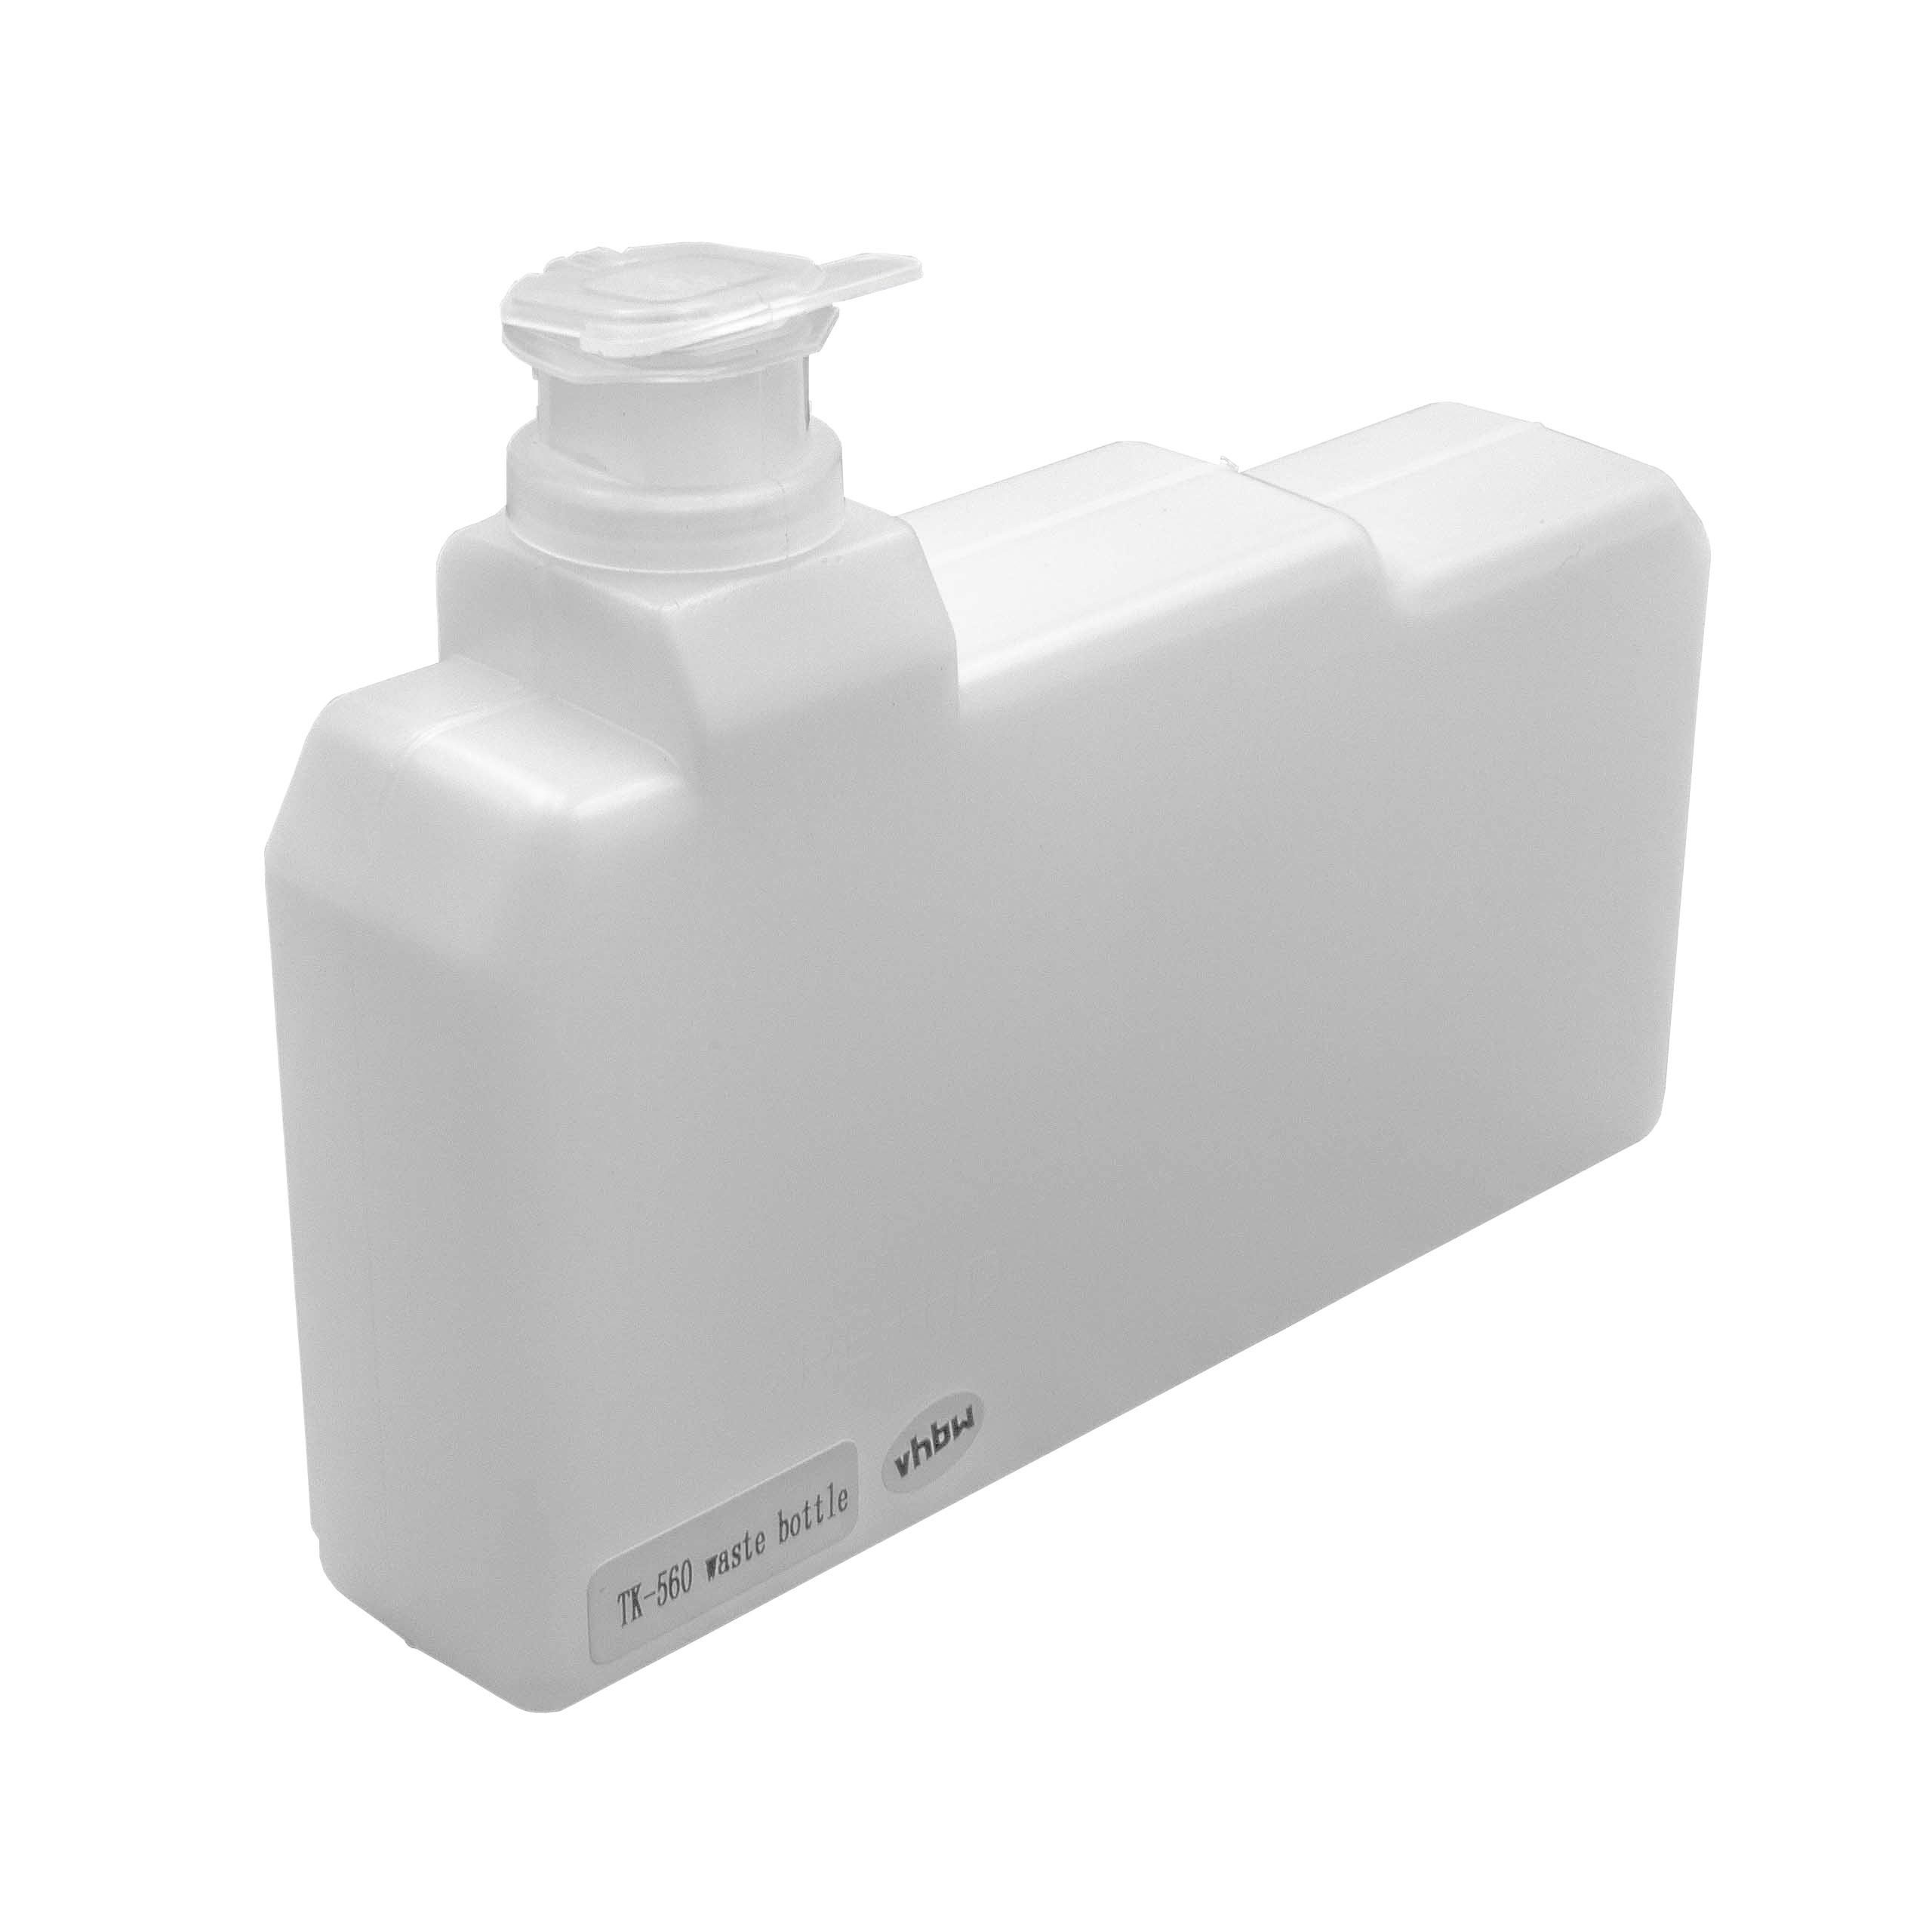 Collecteur de toner remplace Kyocera WT-560 pour imprimante laser Kyocera FS-C5200DN - blanc